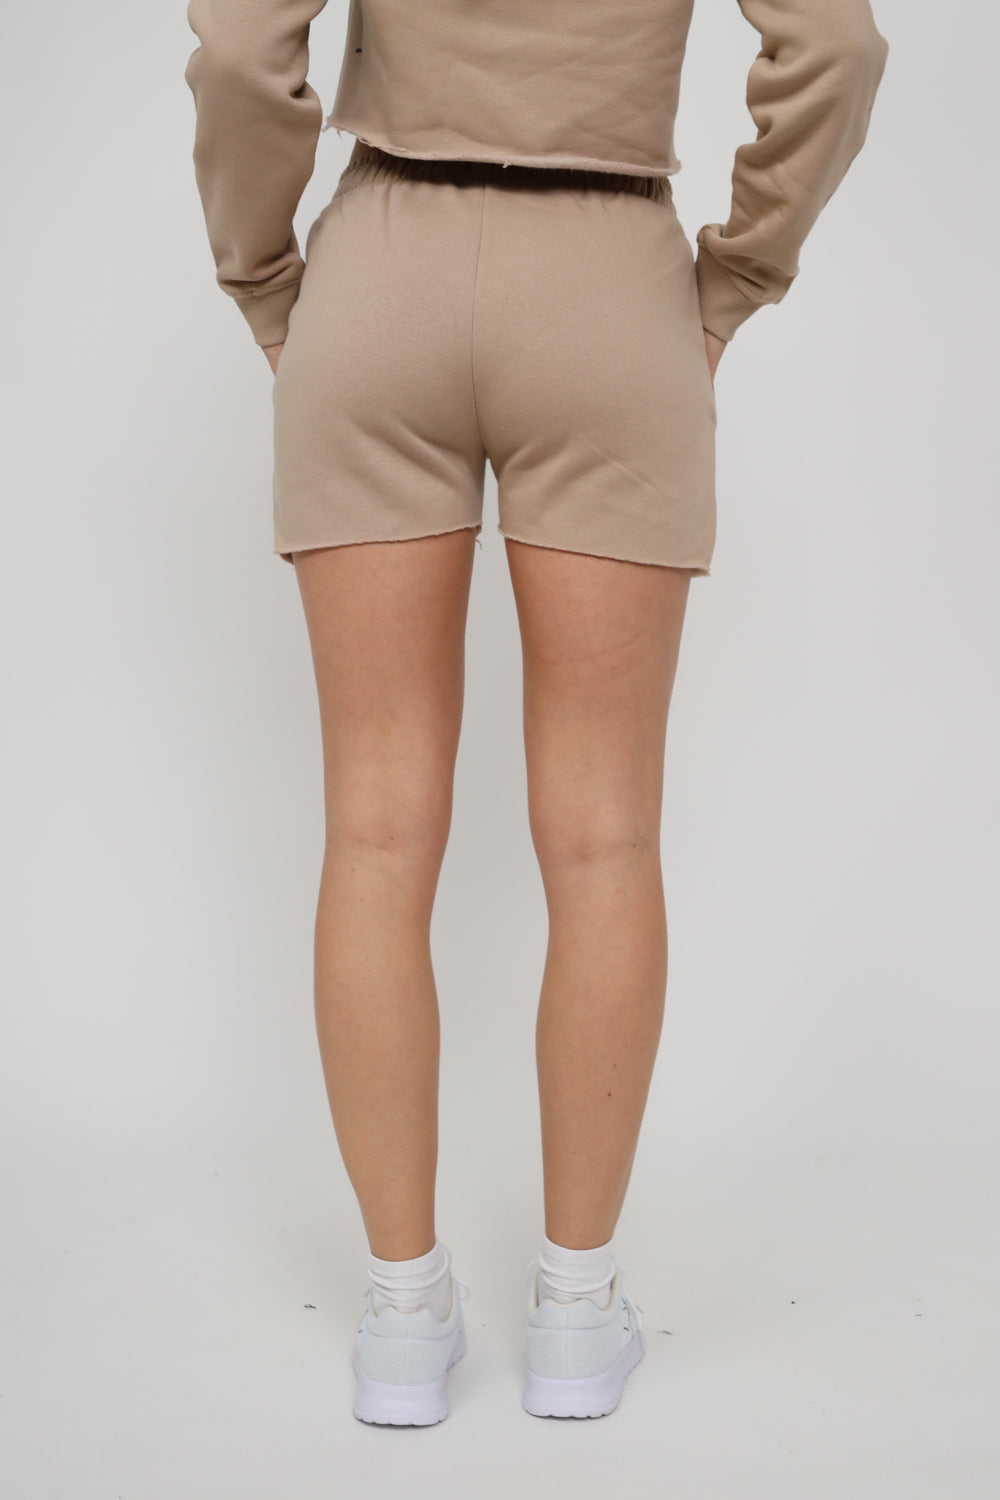 Validate Phoebe Latte Shorts | Validate Fashion Women's Shorts | Hertfordshire